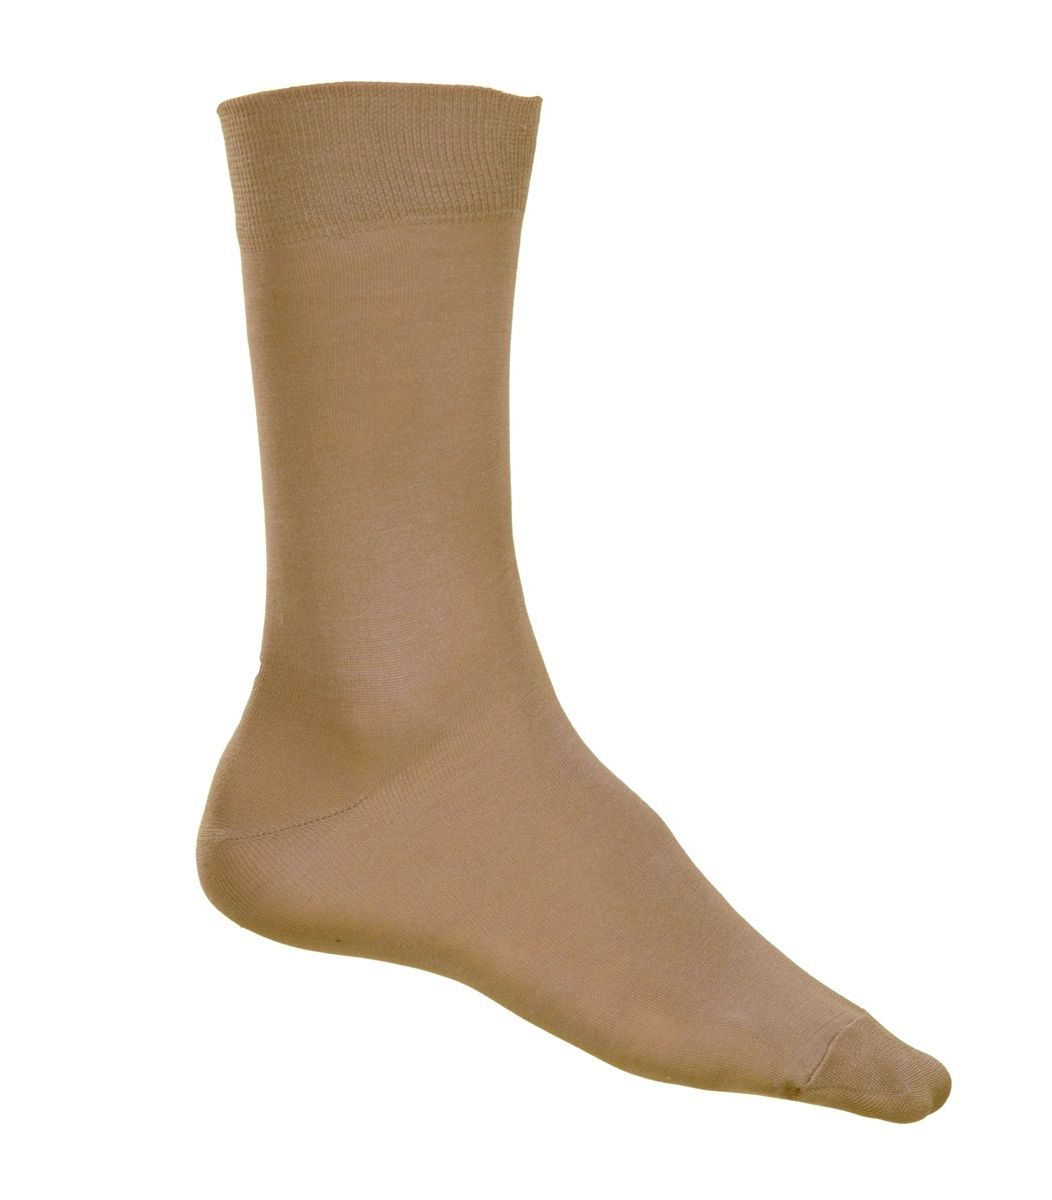 Ανδρική Κάλτσα, ελαστική βαμβακερή, μπεζ